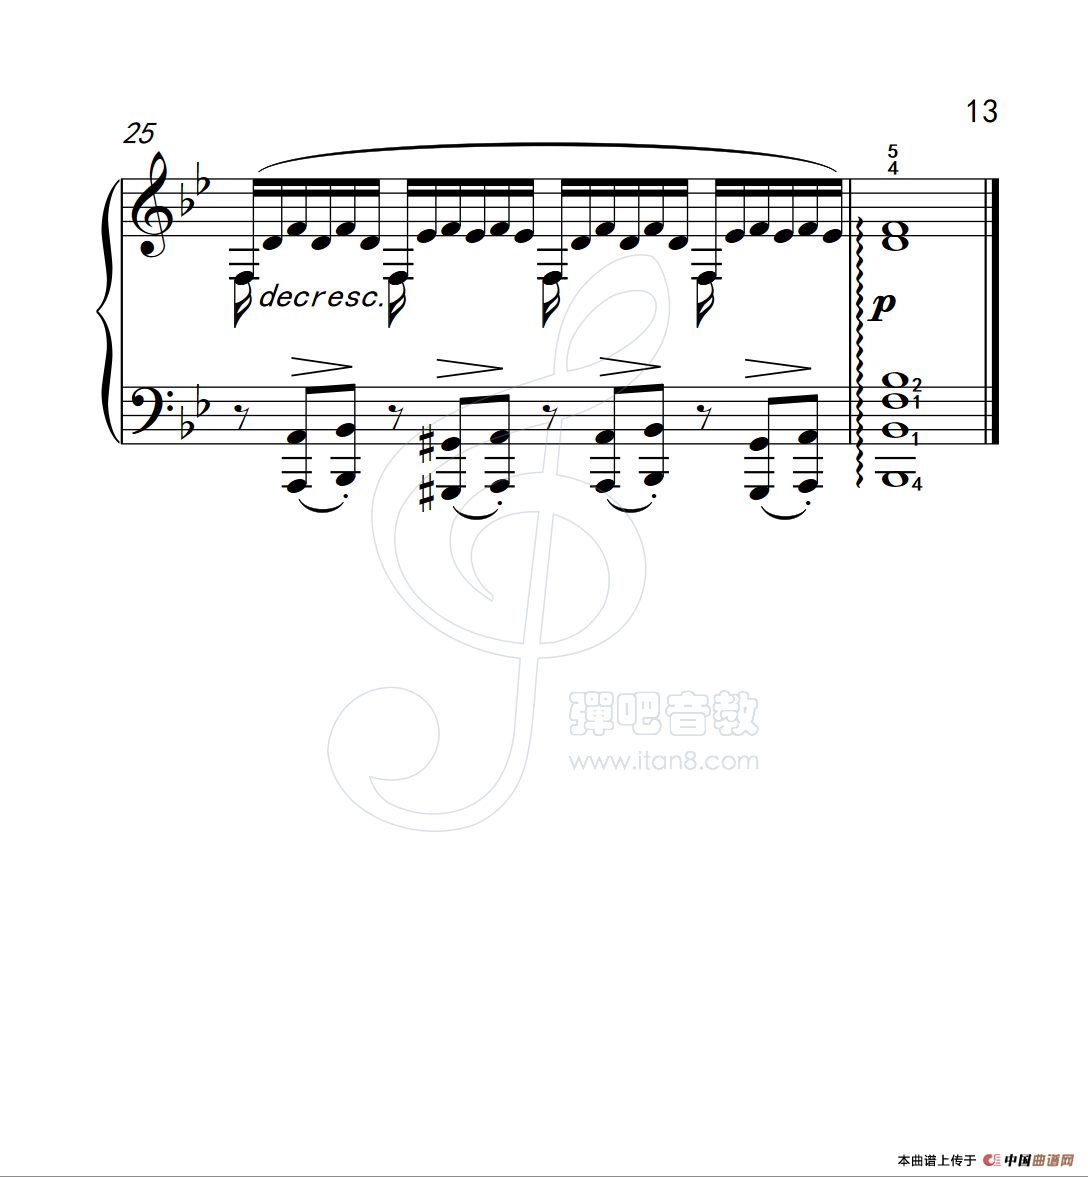 《练习曲 32》钢琴曲谱图分享